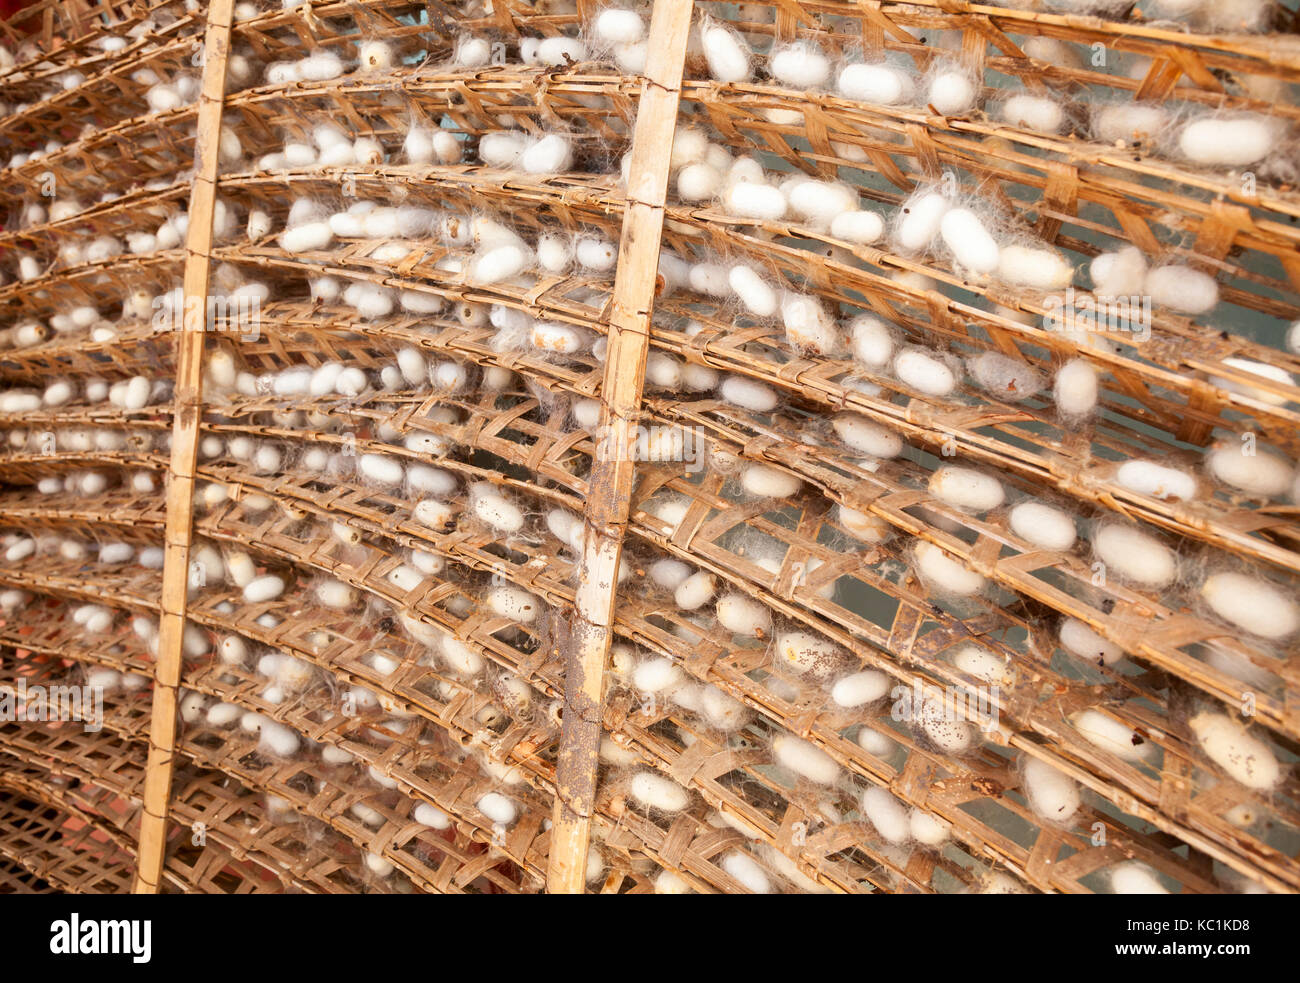 Les cocons de vers à soie avec châssis à une usine de soie Banque D'Images